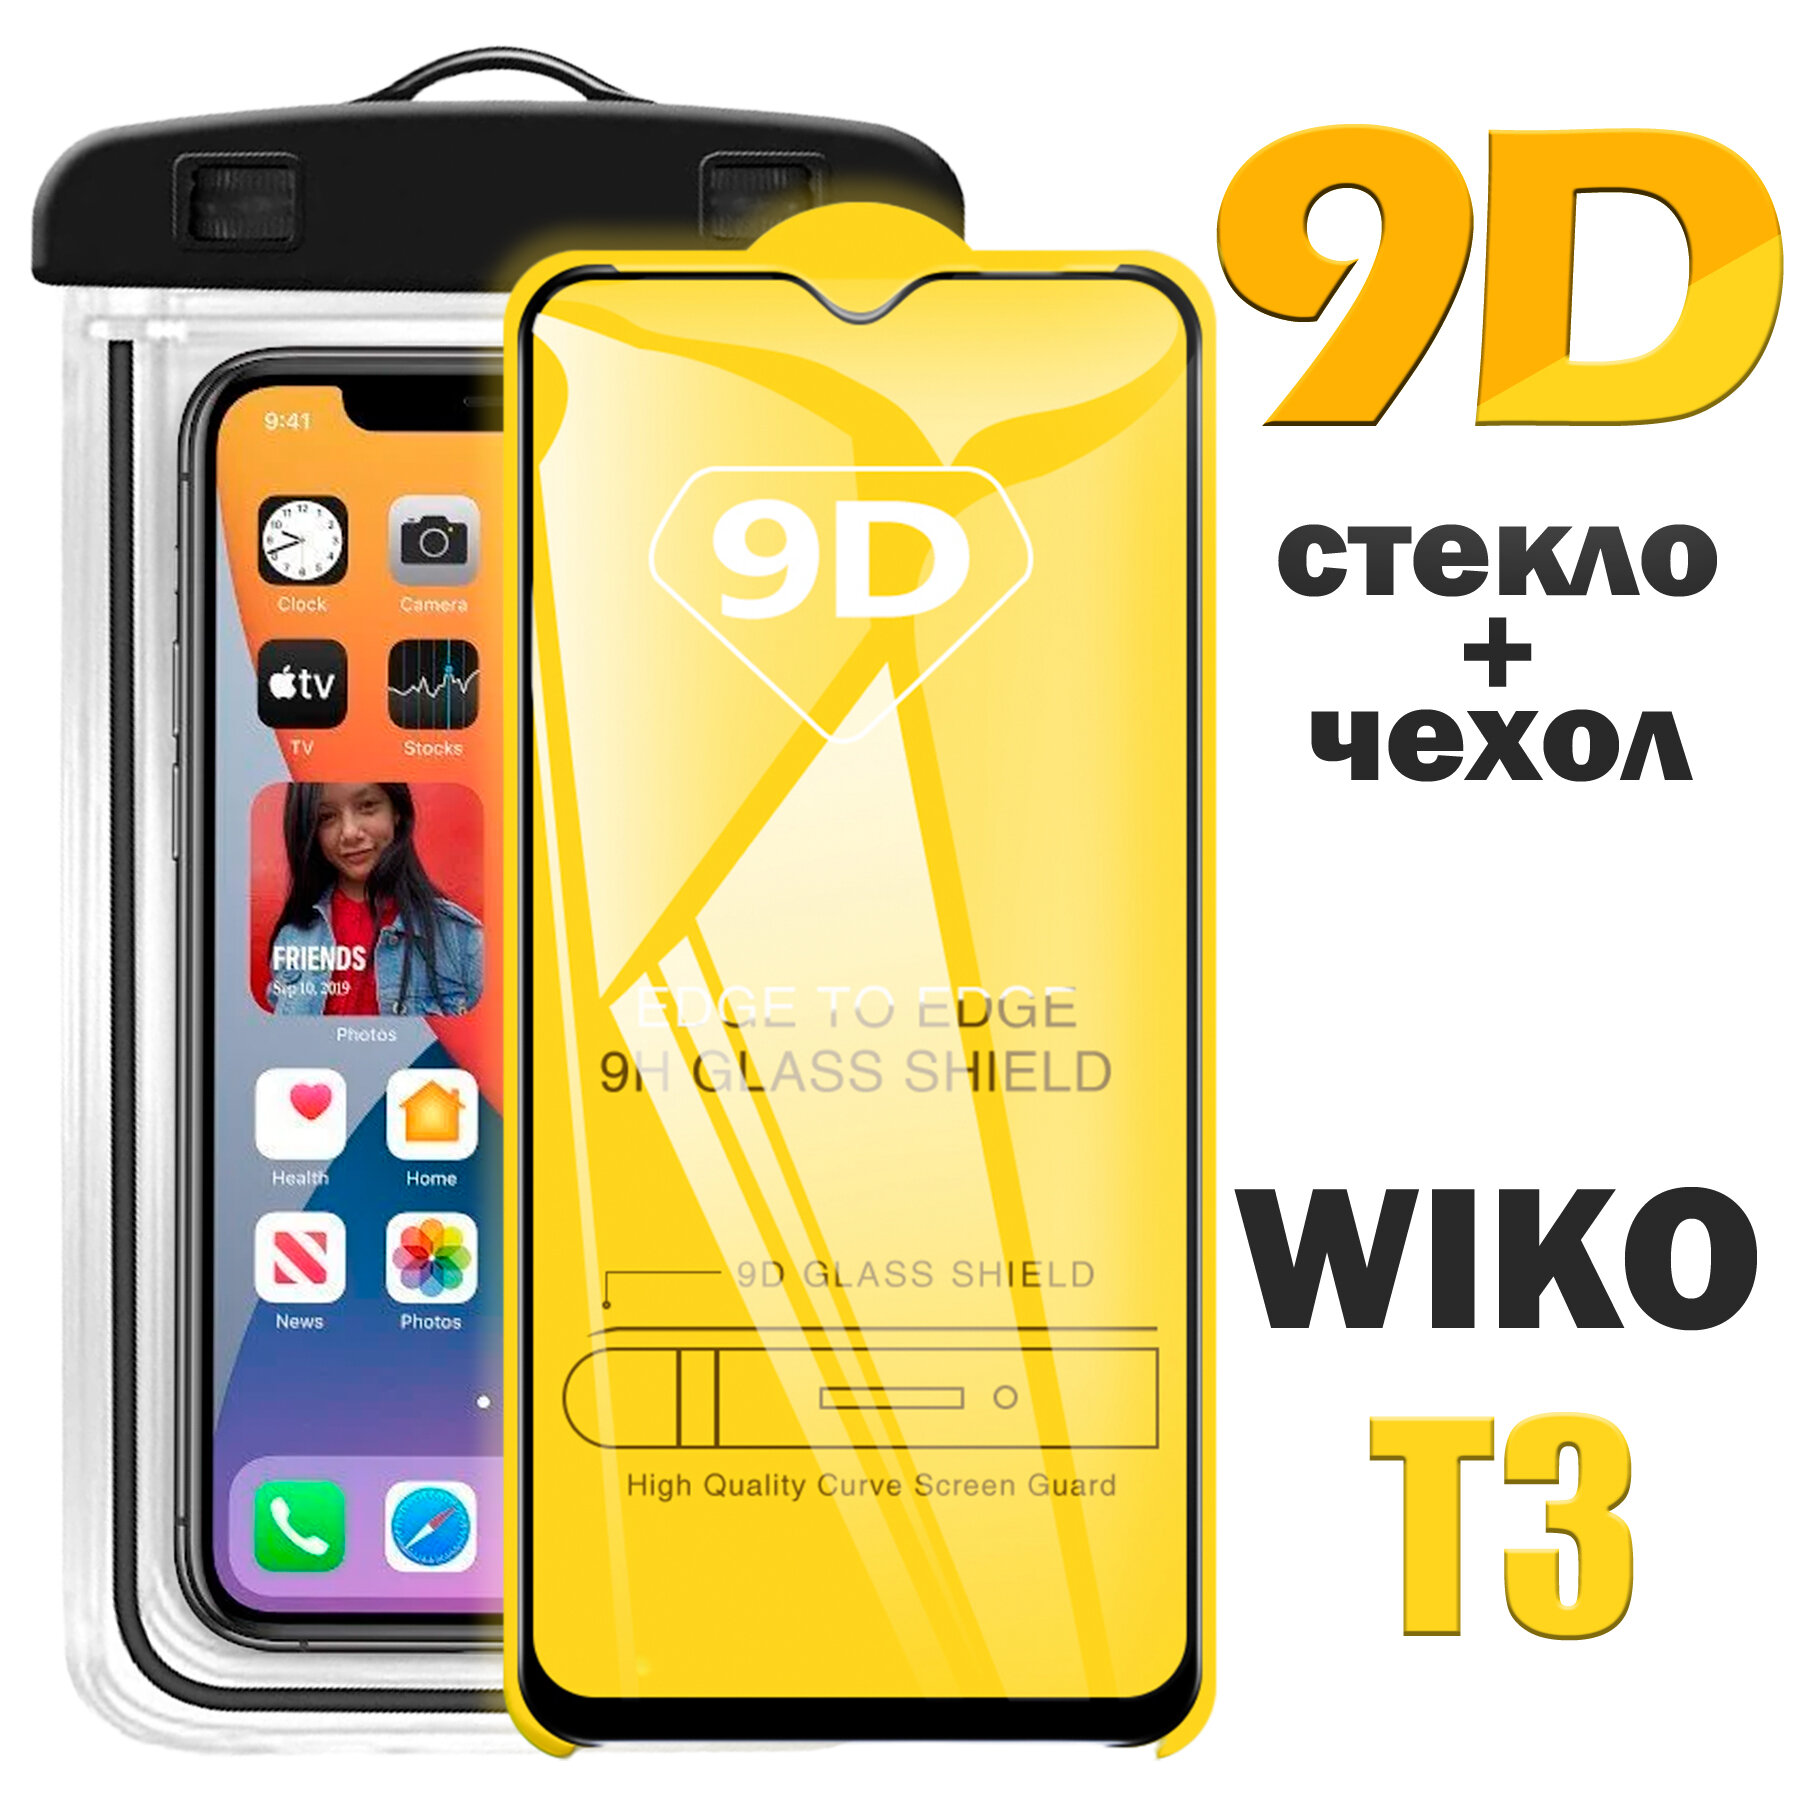 Защитное стекло 9D для Wiko T3 / Вико Т3 / комплект стекло + герметичный чехол